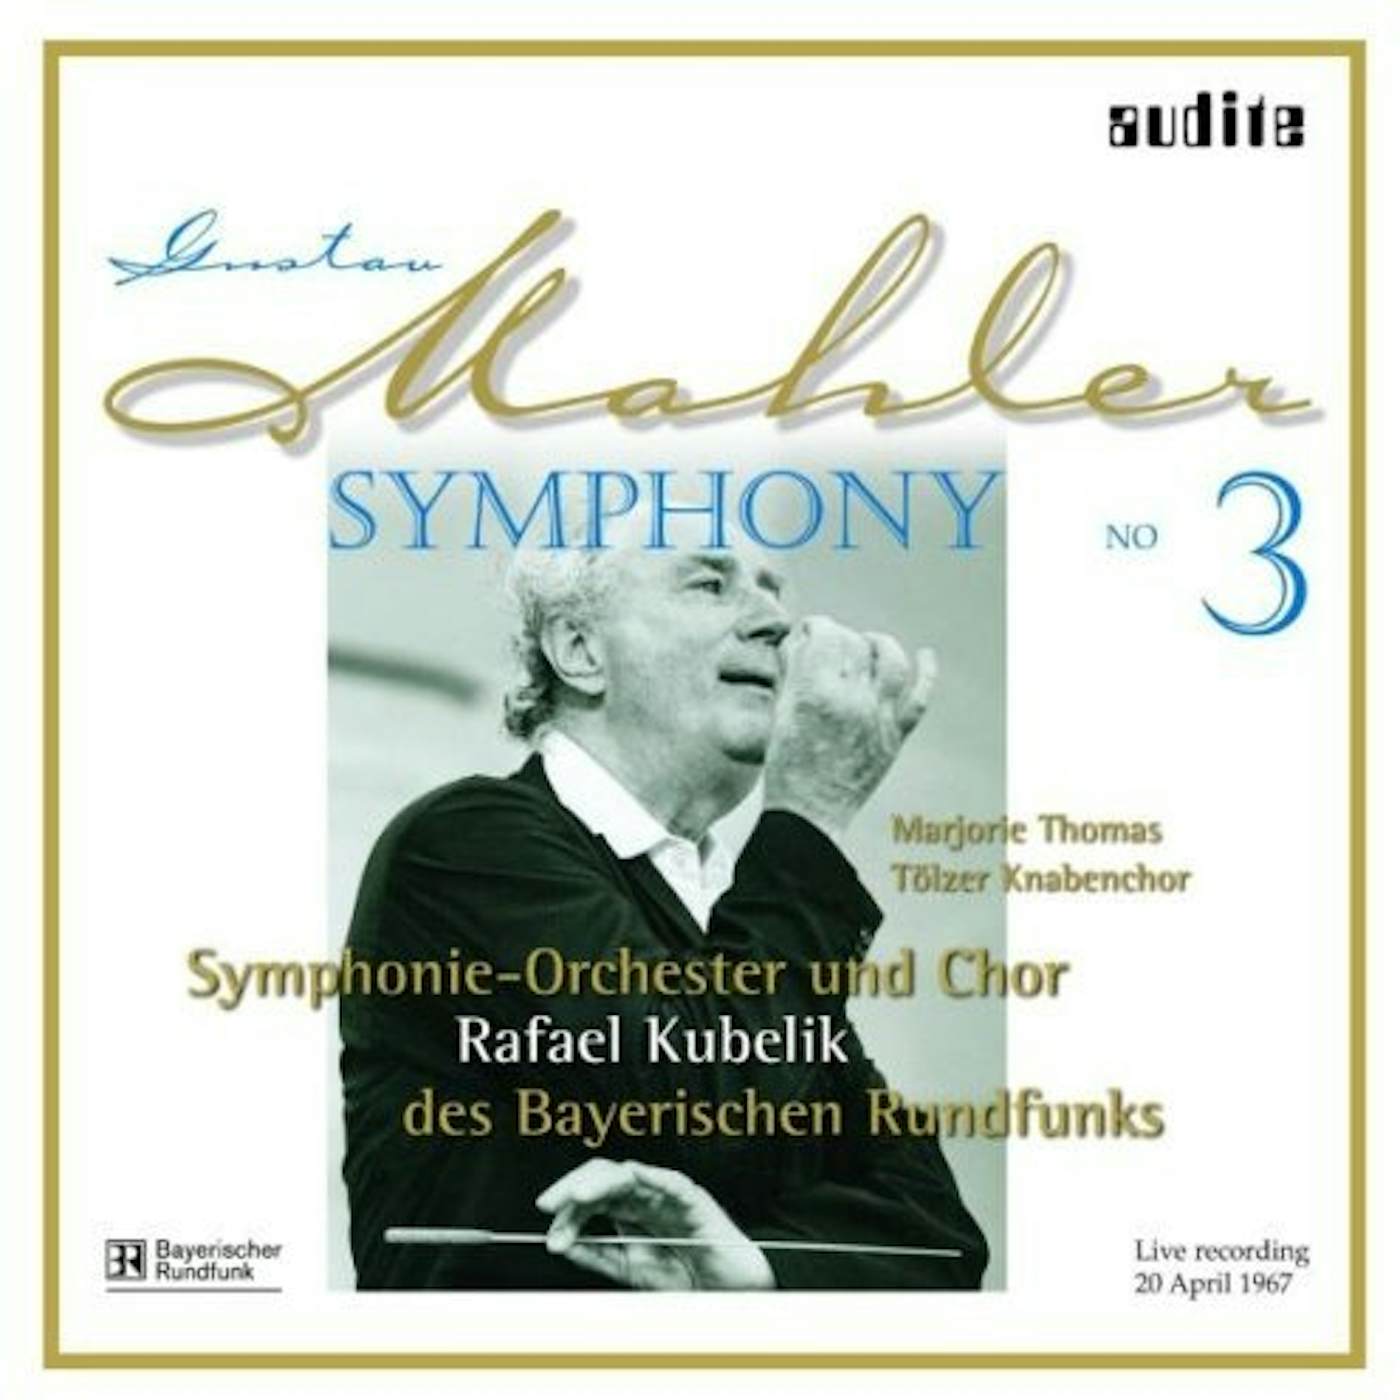 Gustav Mahler SYM 3 Vinyl Record